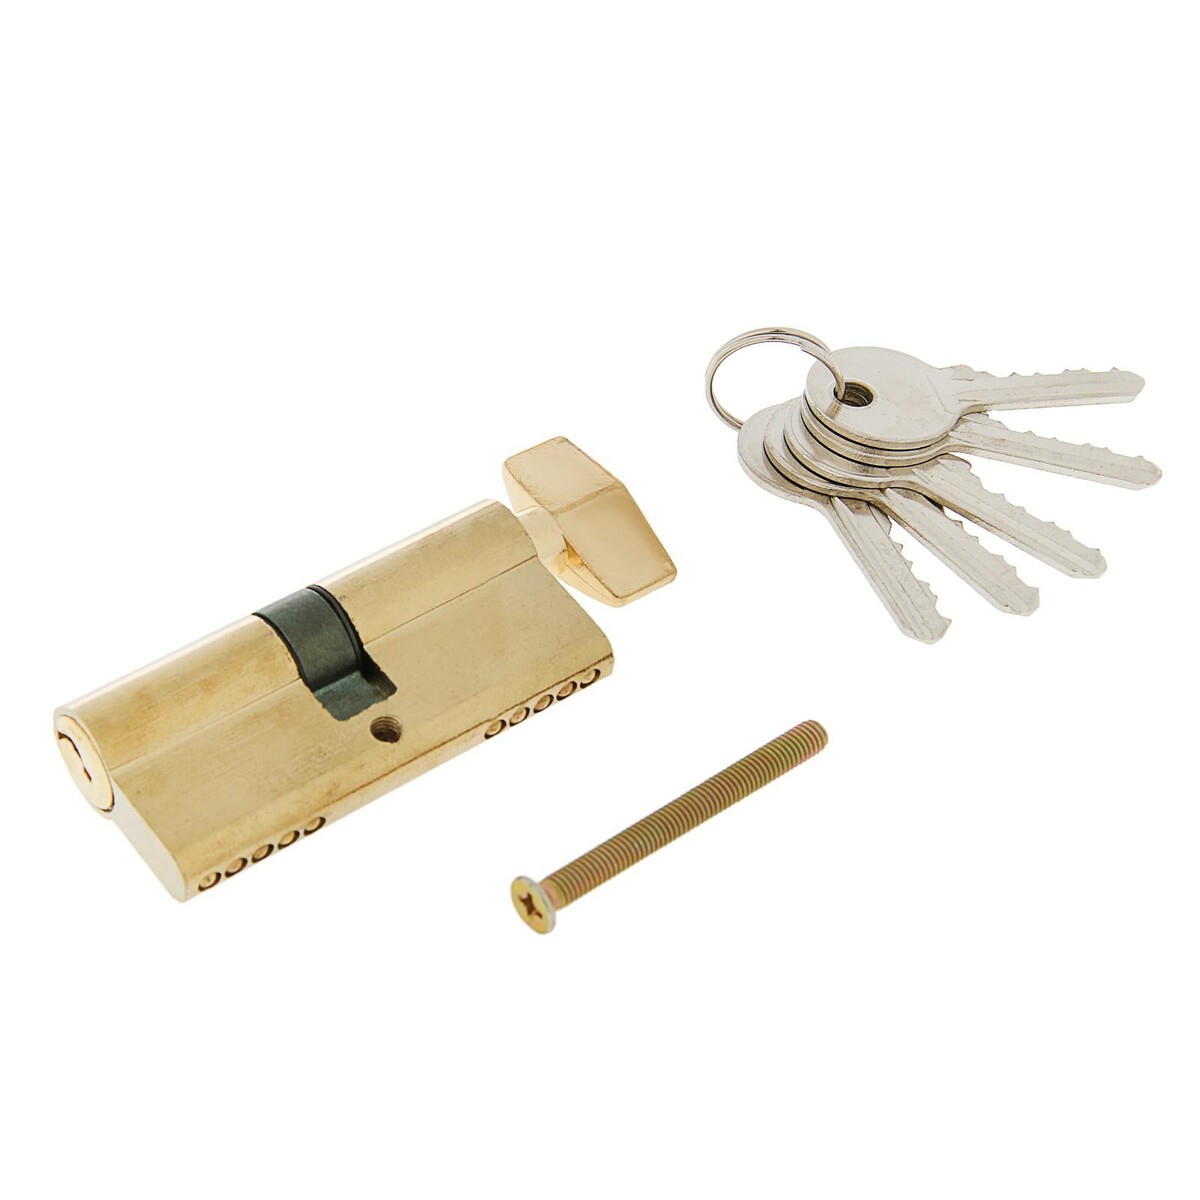 Цилиндровый механизм, 70 мм, с вертушкой, английский ключ, 5 ключей, цвет золото замок навесной аллюр вс1ч 375д цилиндровый 5 ключей